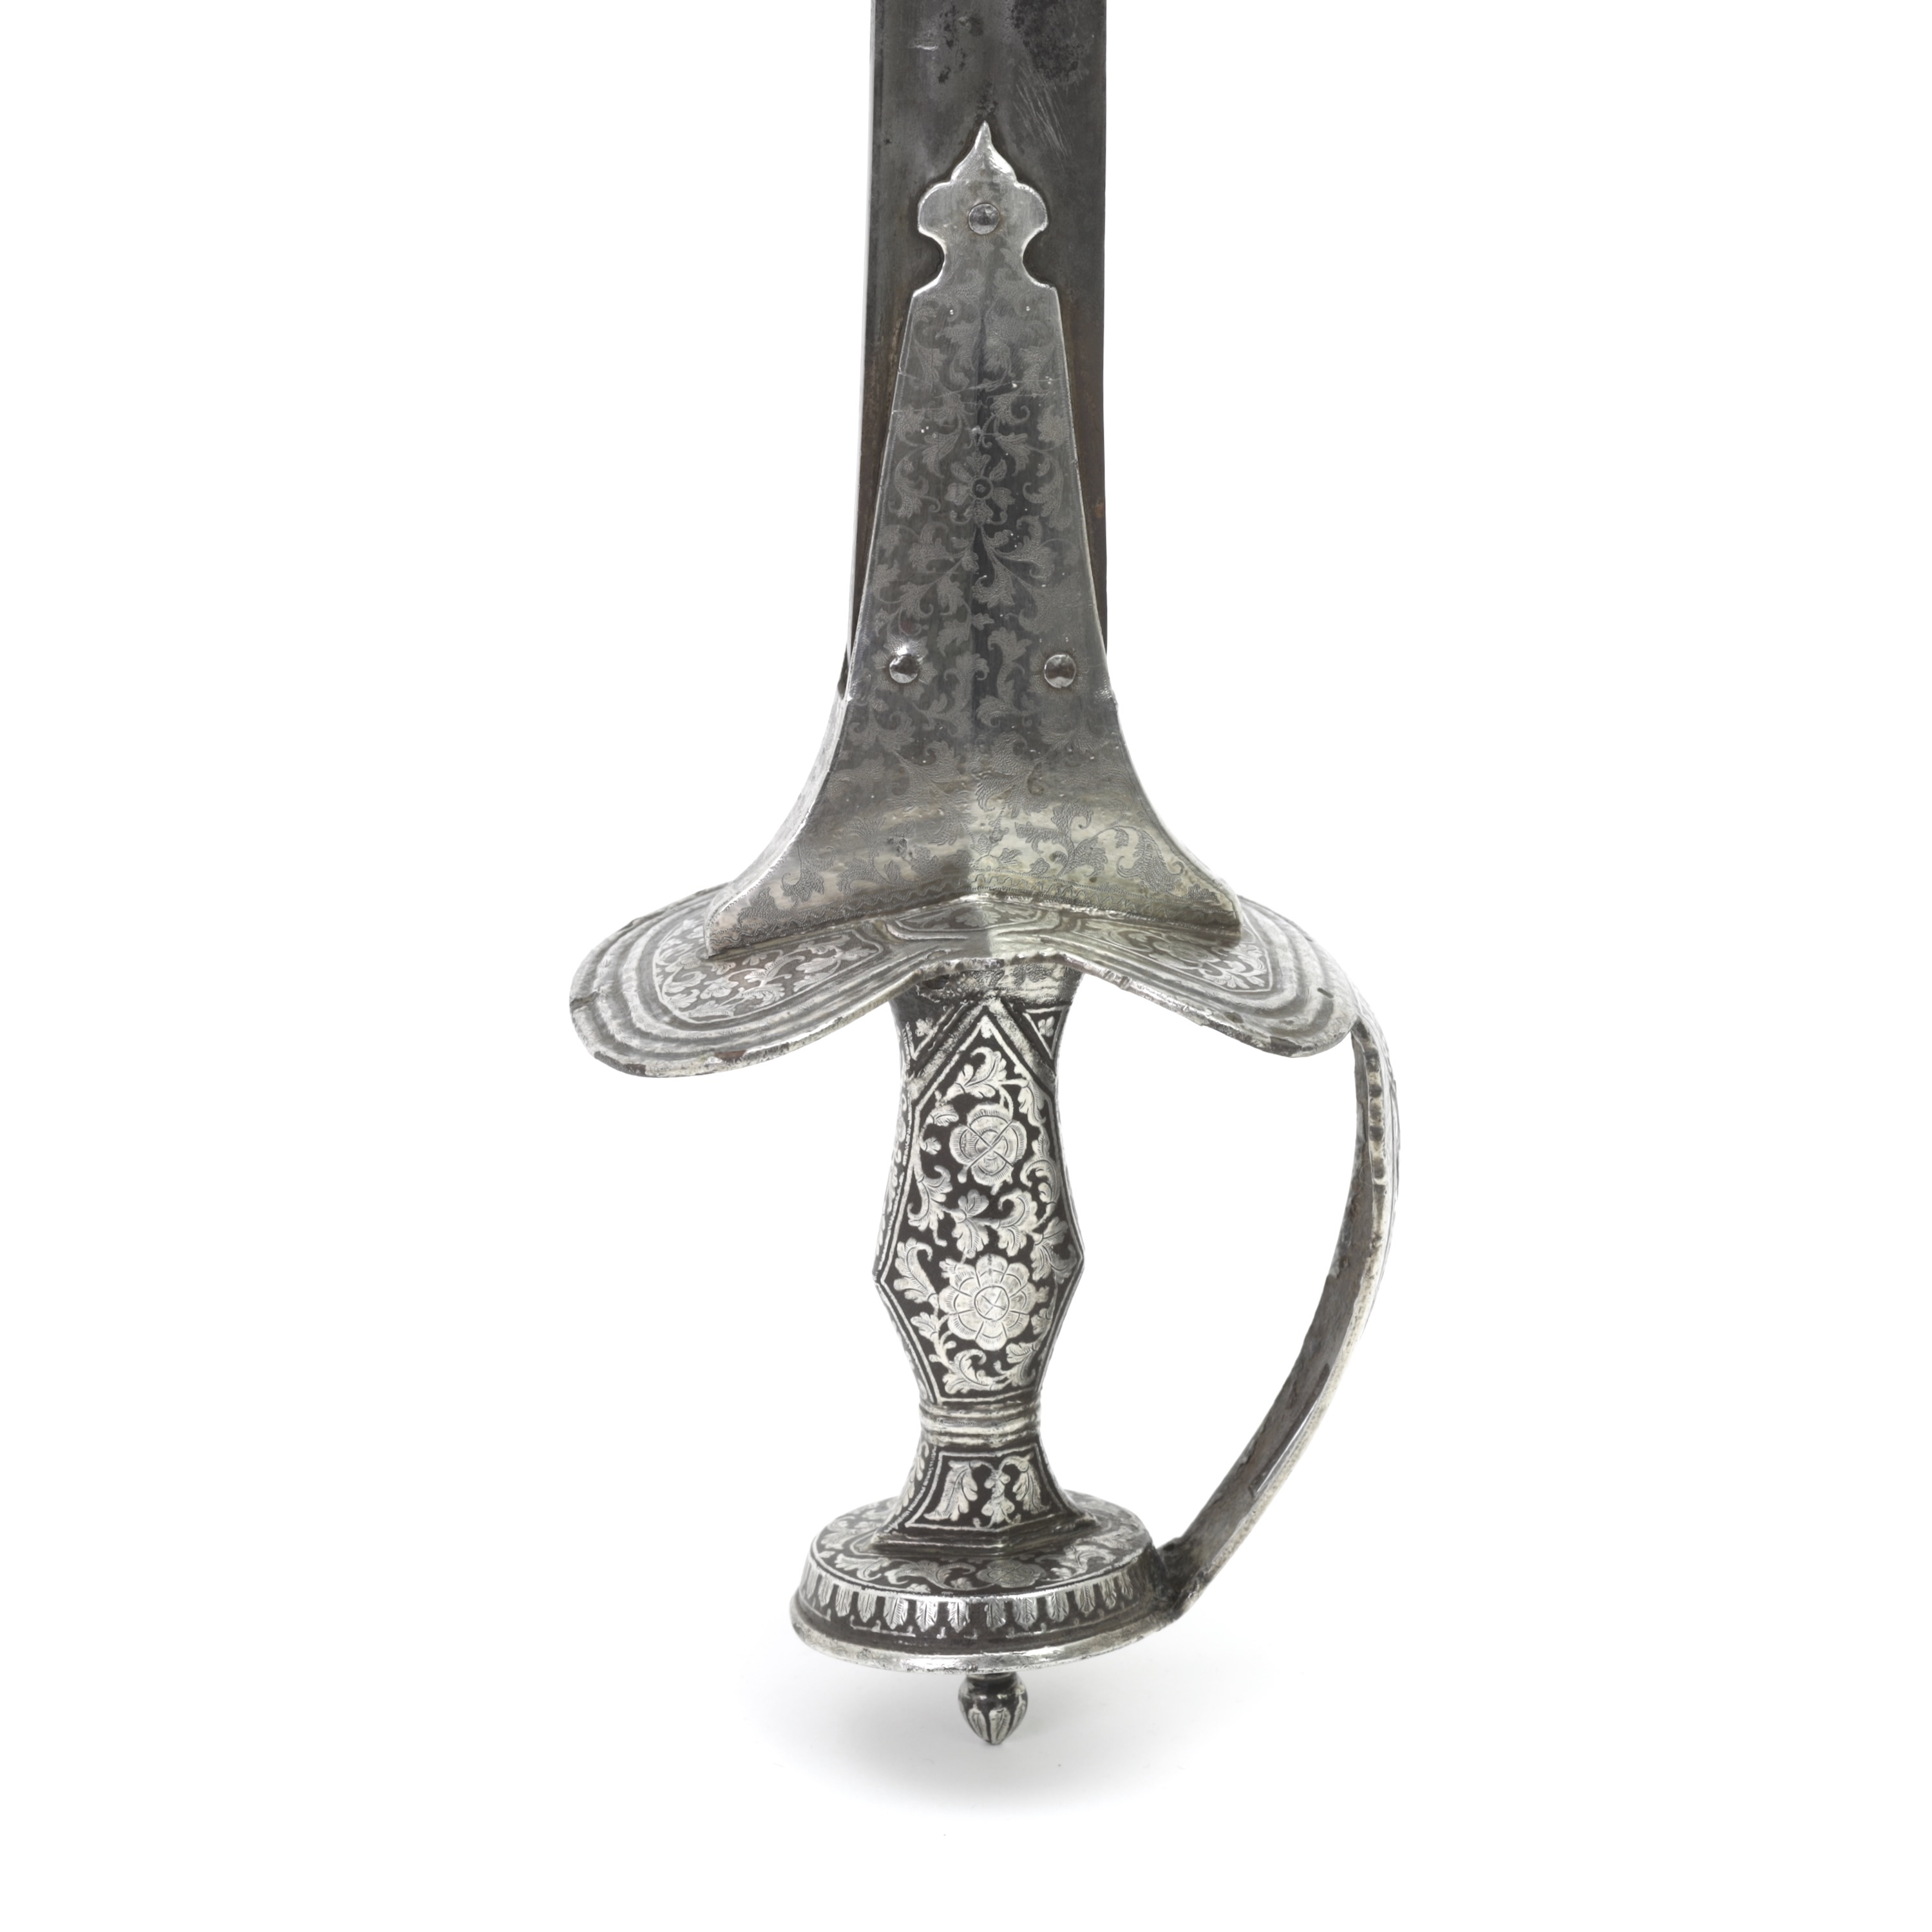 Deccan firangi with fine silver overlaid hilt